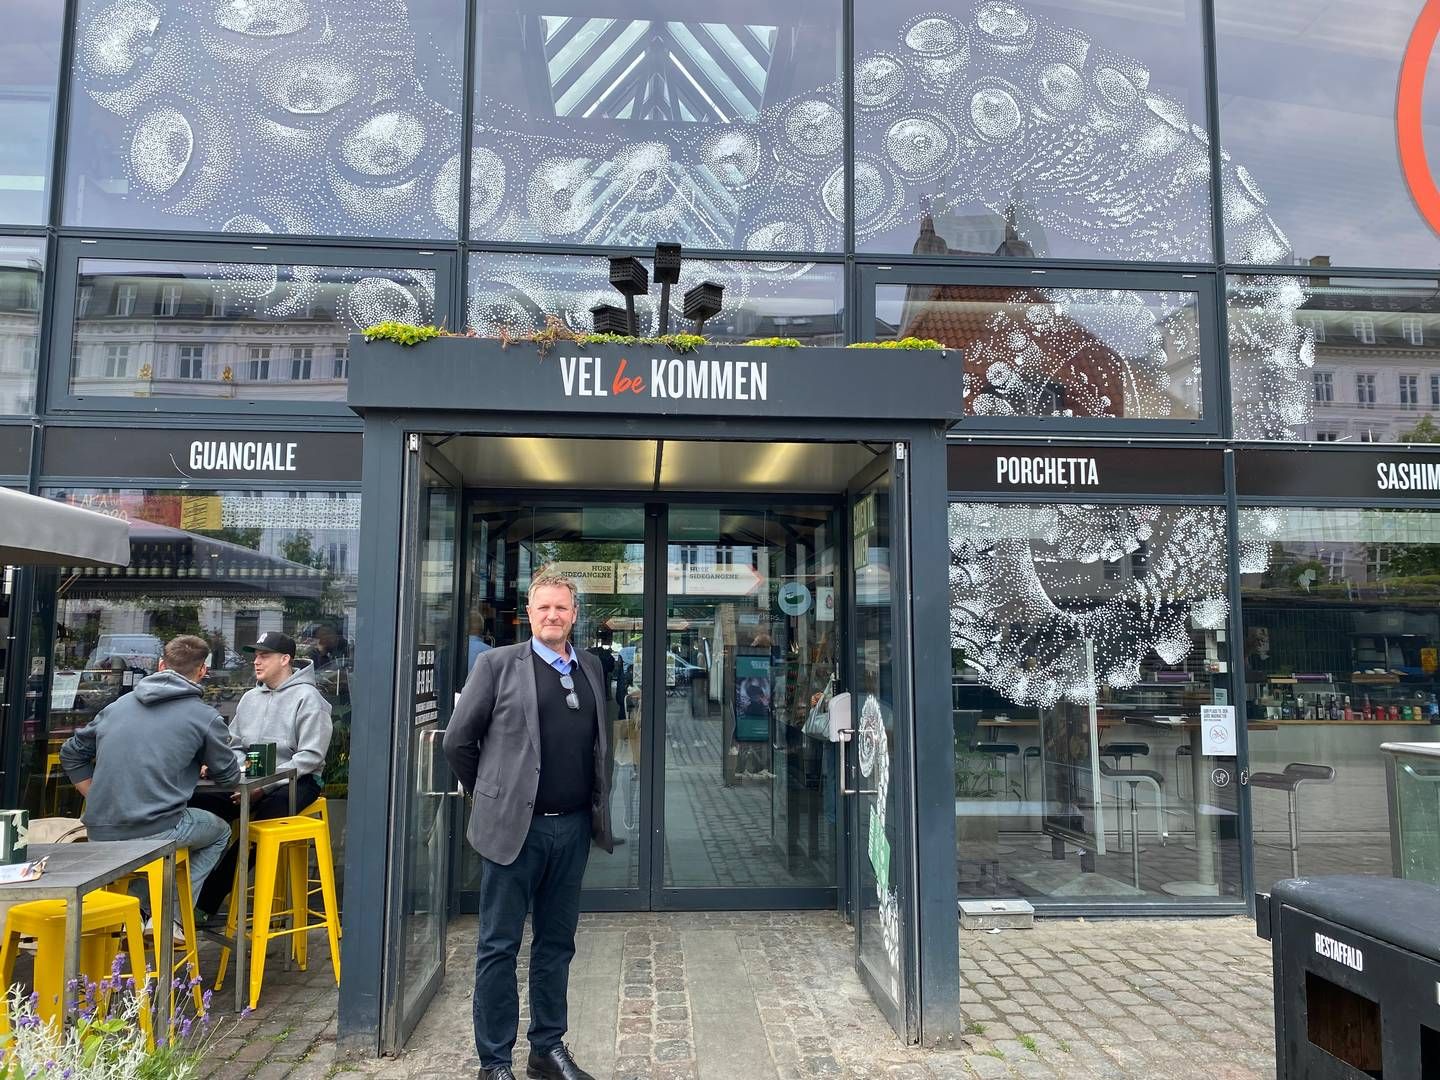 Adm. direktør Thomas Høy vil med Kalus nye butik i Torvehallerne blandt andet lære danskerne at bruge mere vildt i madlavningen. | Foto: Simone Scheuer-Hansen